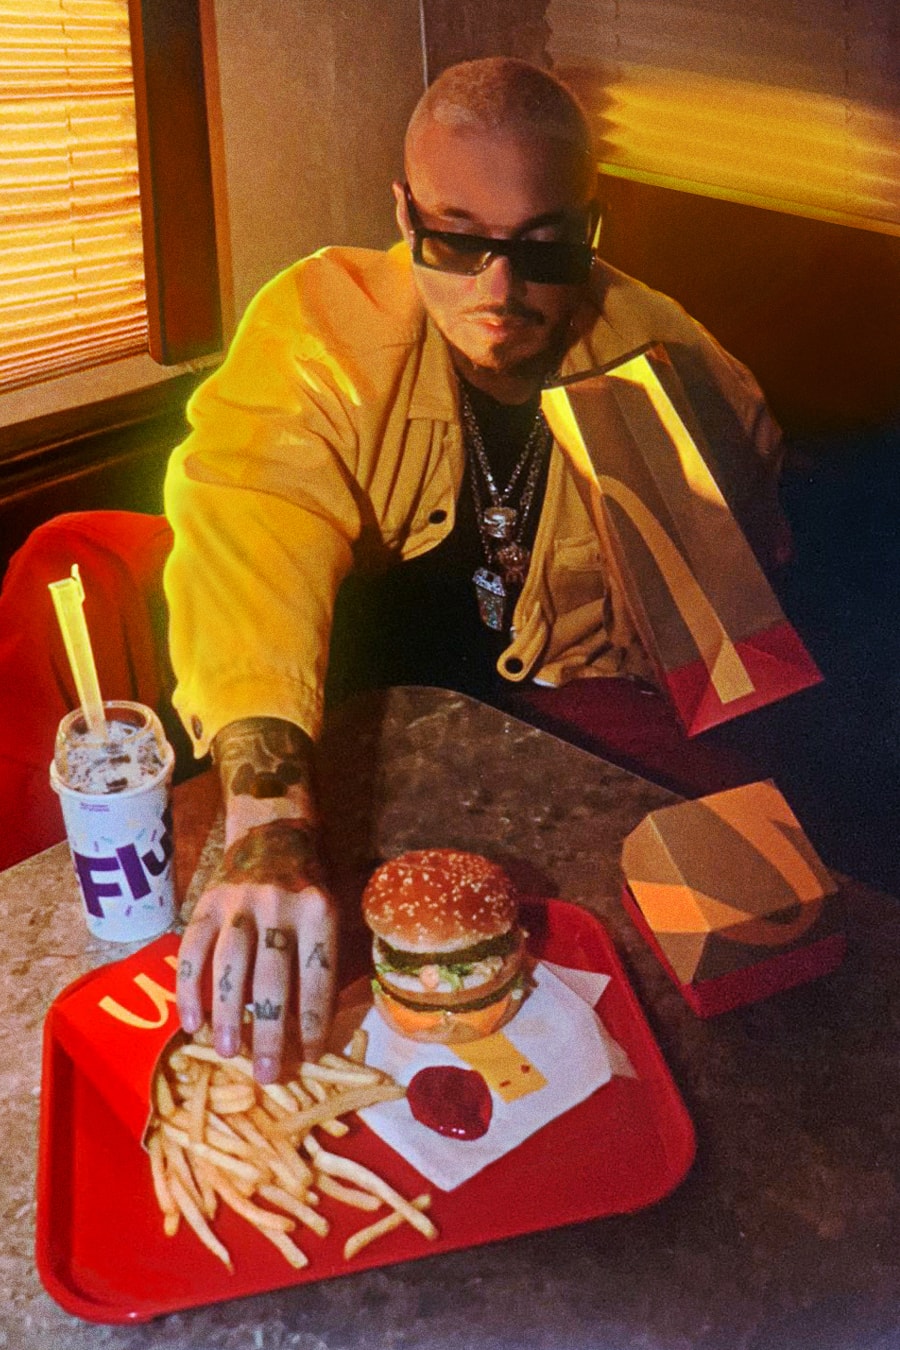 マクドナルドがJバルヴィンとのコラボセットを販売 j balvin mcdonalds artist meal collaboration big mac oreo mcflurry fries ketchup 